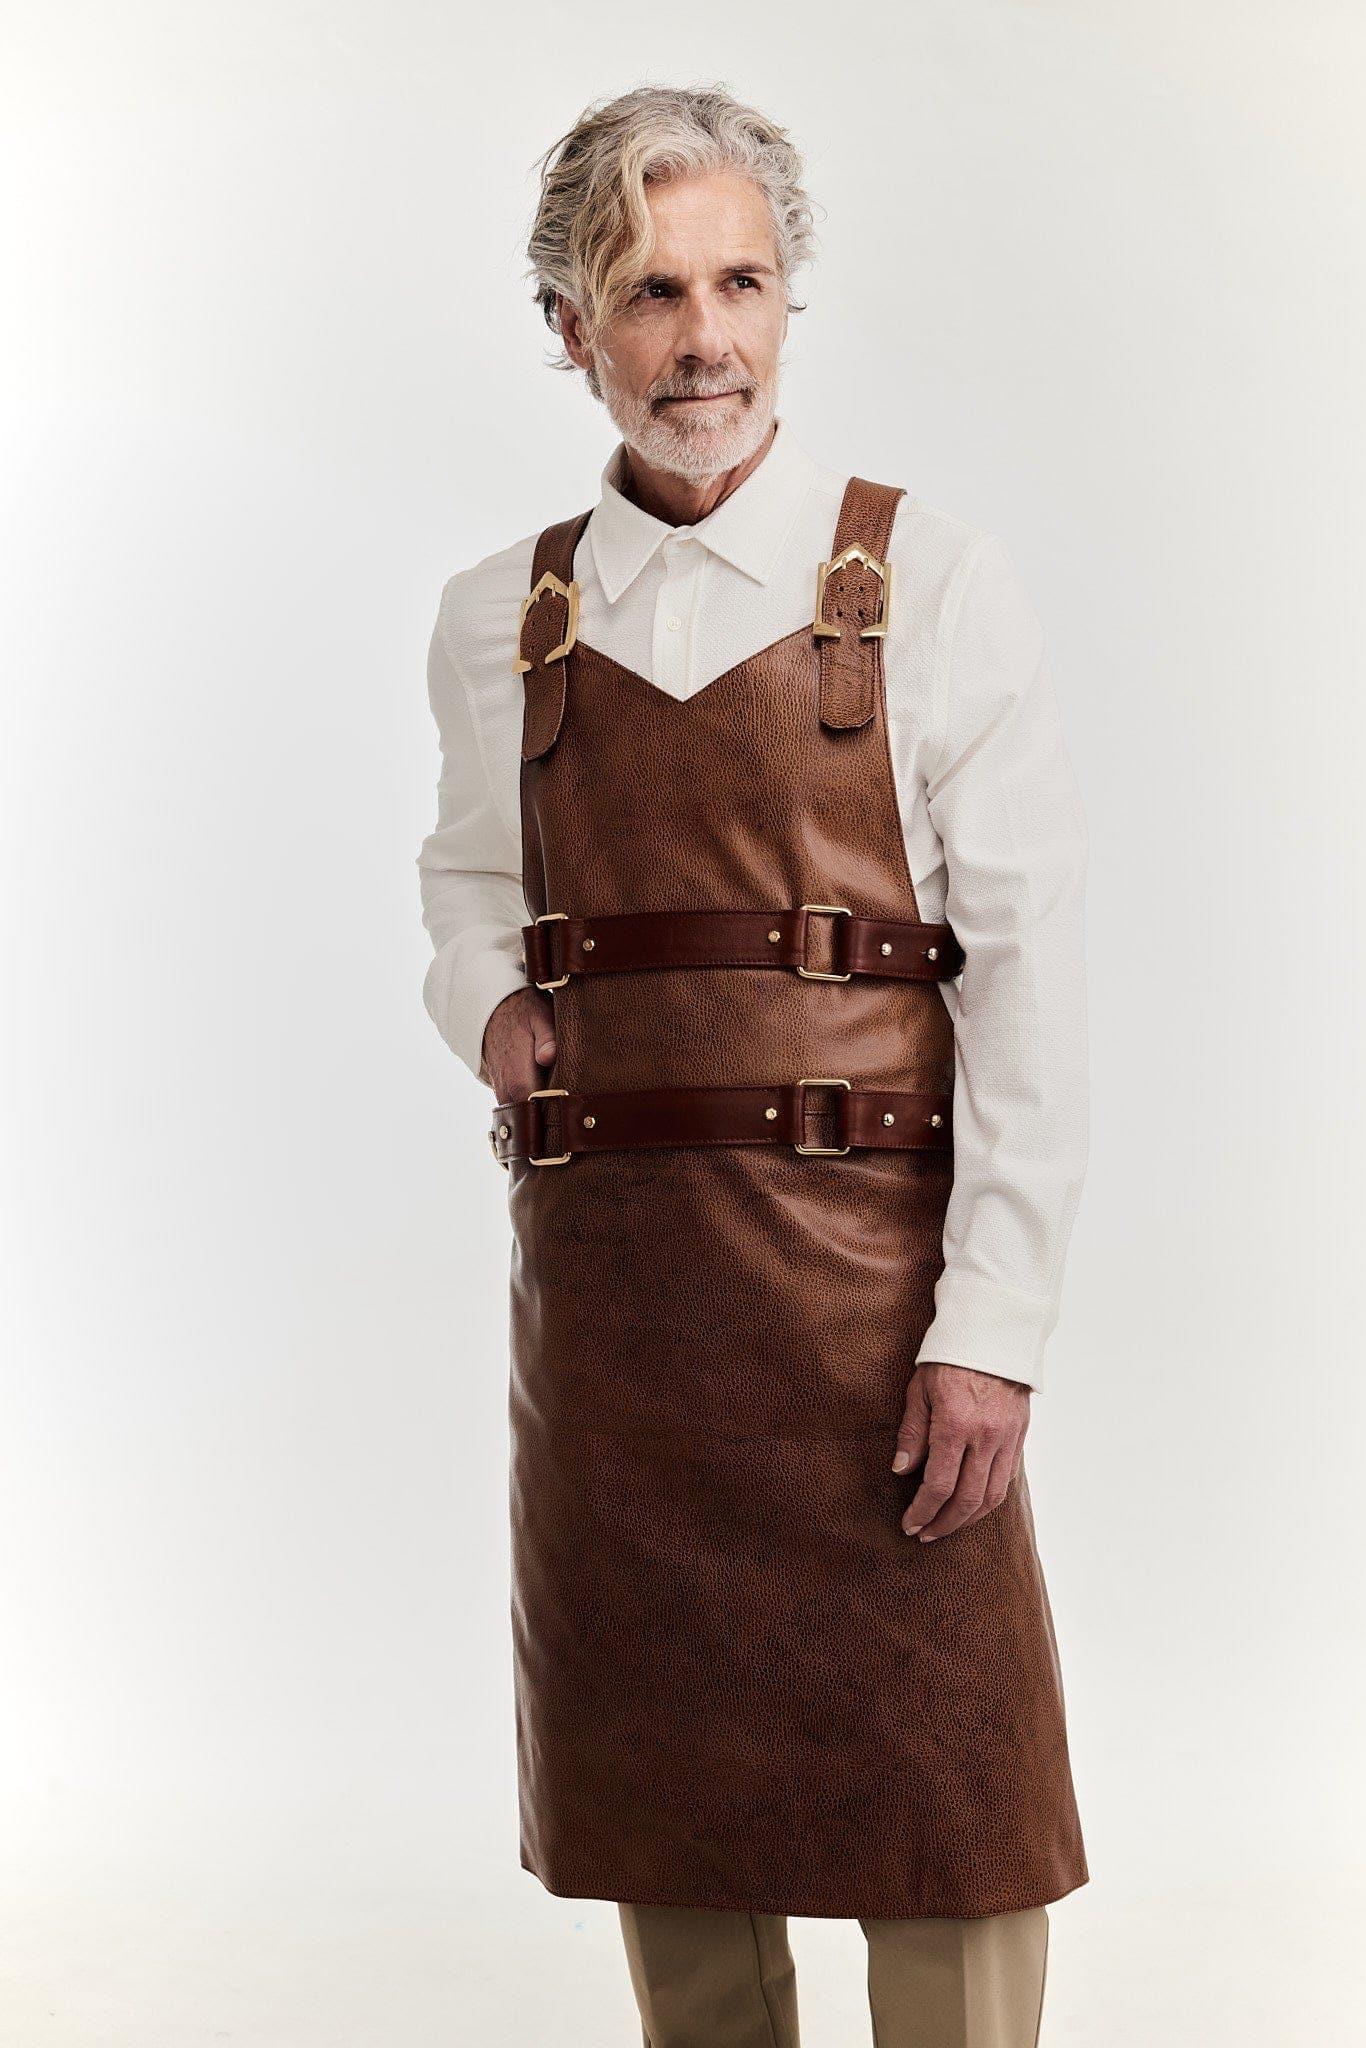 Eskandur men's brown leather luxury premium apron white shirt grey haired mannequin rihgt hand in pocket